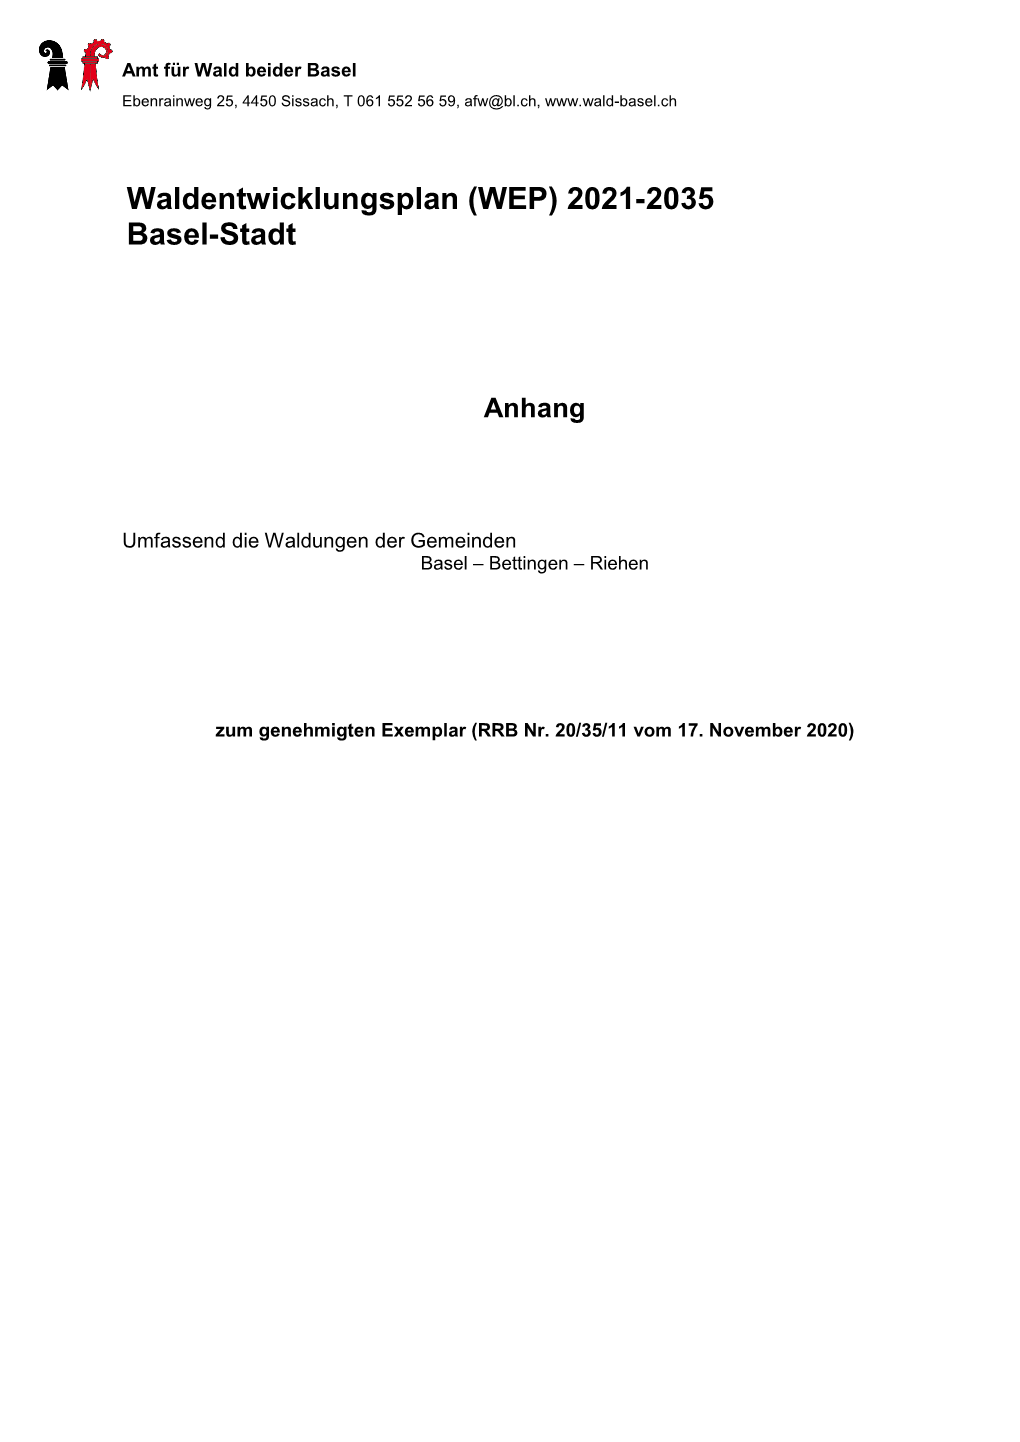 WEP Basel-Stadt 2021-2035: Anhang Seite 54 Von 78